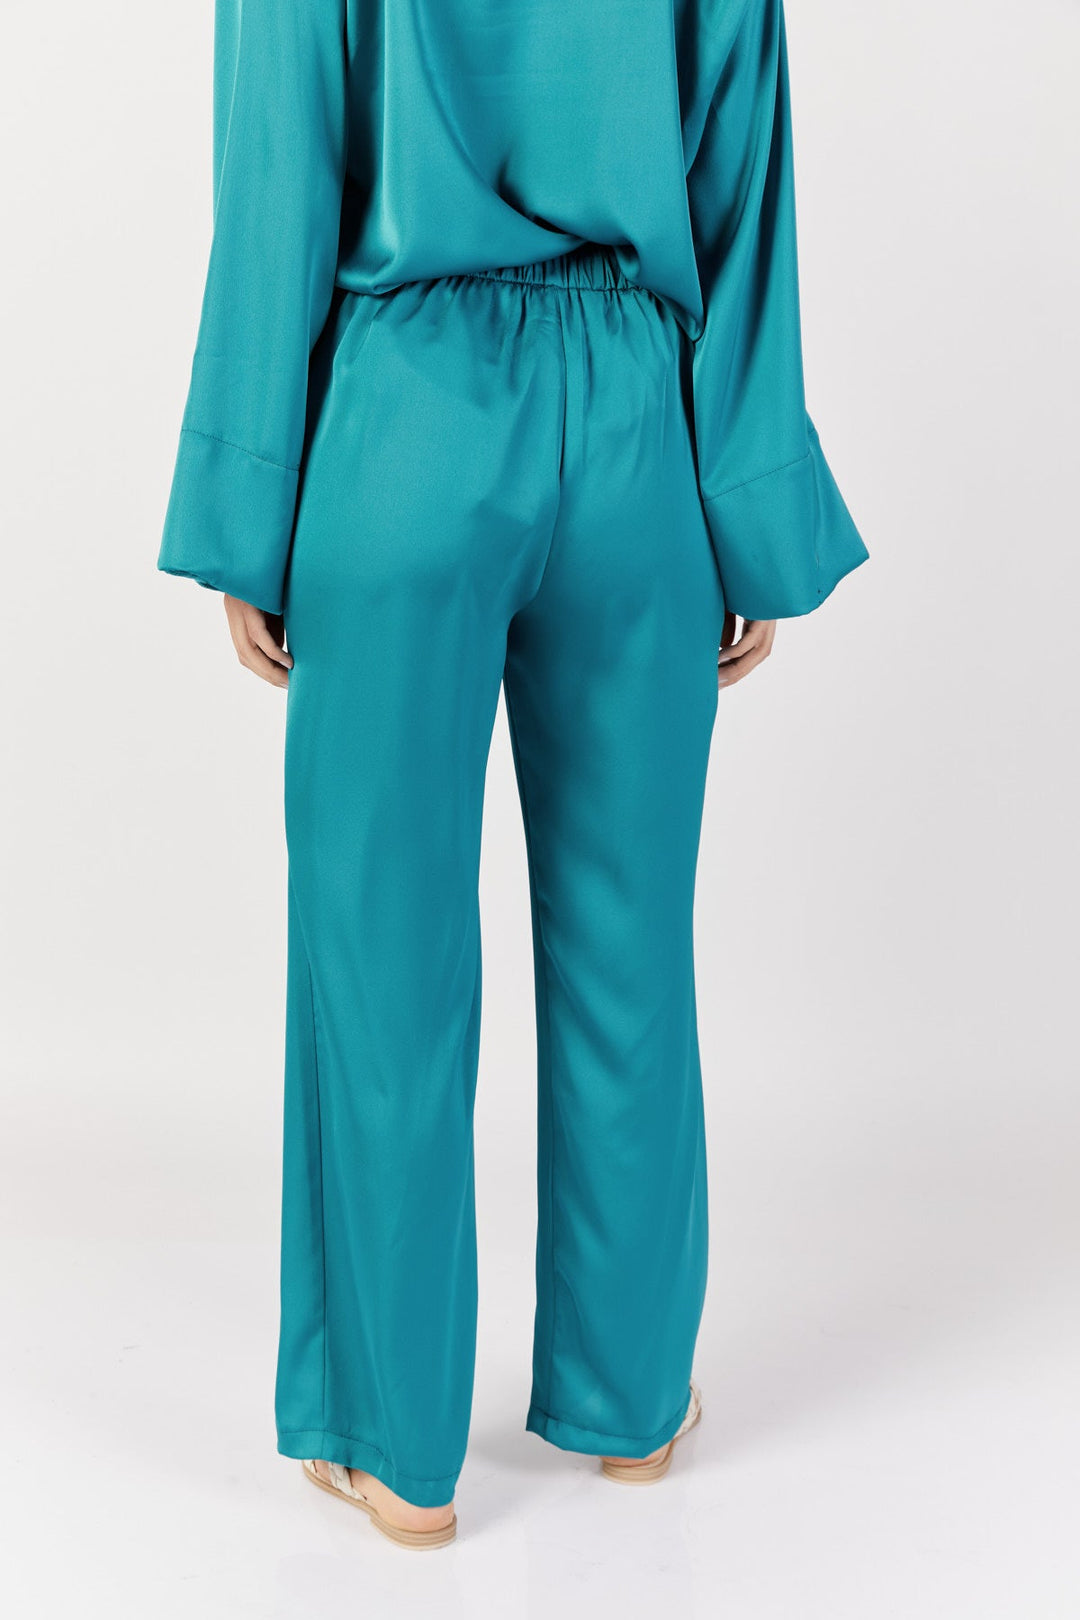 מכנסיים ישרים זוהרה בצבע טורקיז - Dana Sidi